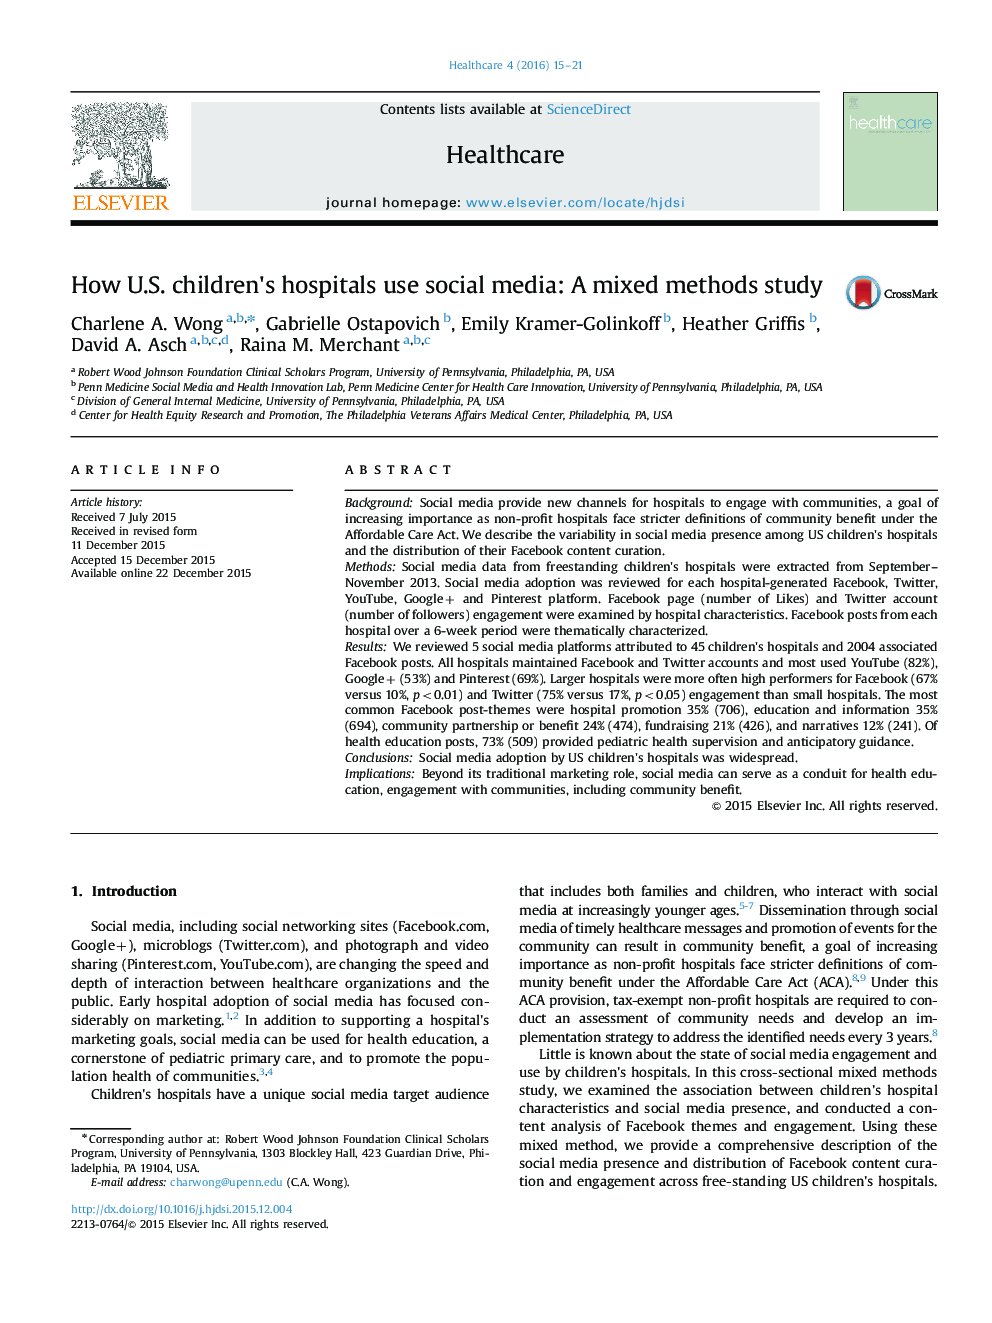 نحوه استفاده بیمارستان کودکان ایالات متحده از رسانه های اجتماعی: مطالعه روش ترکیبی